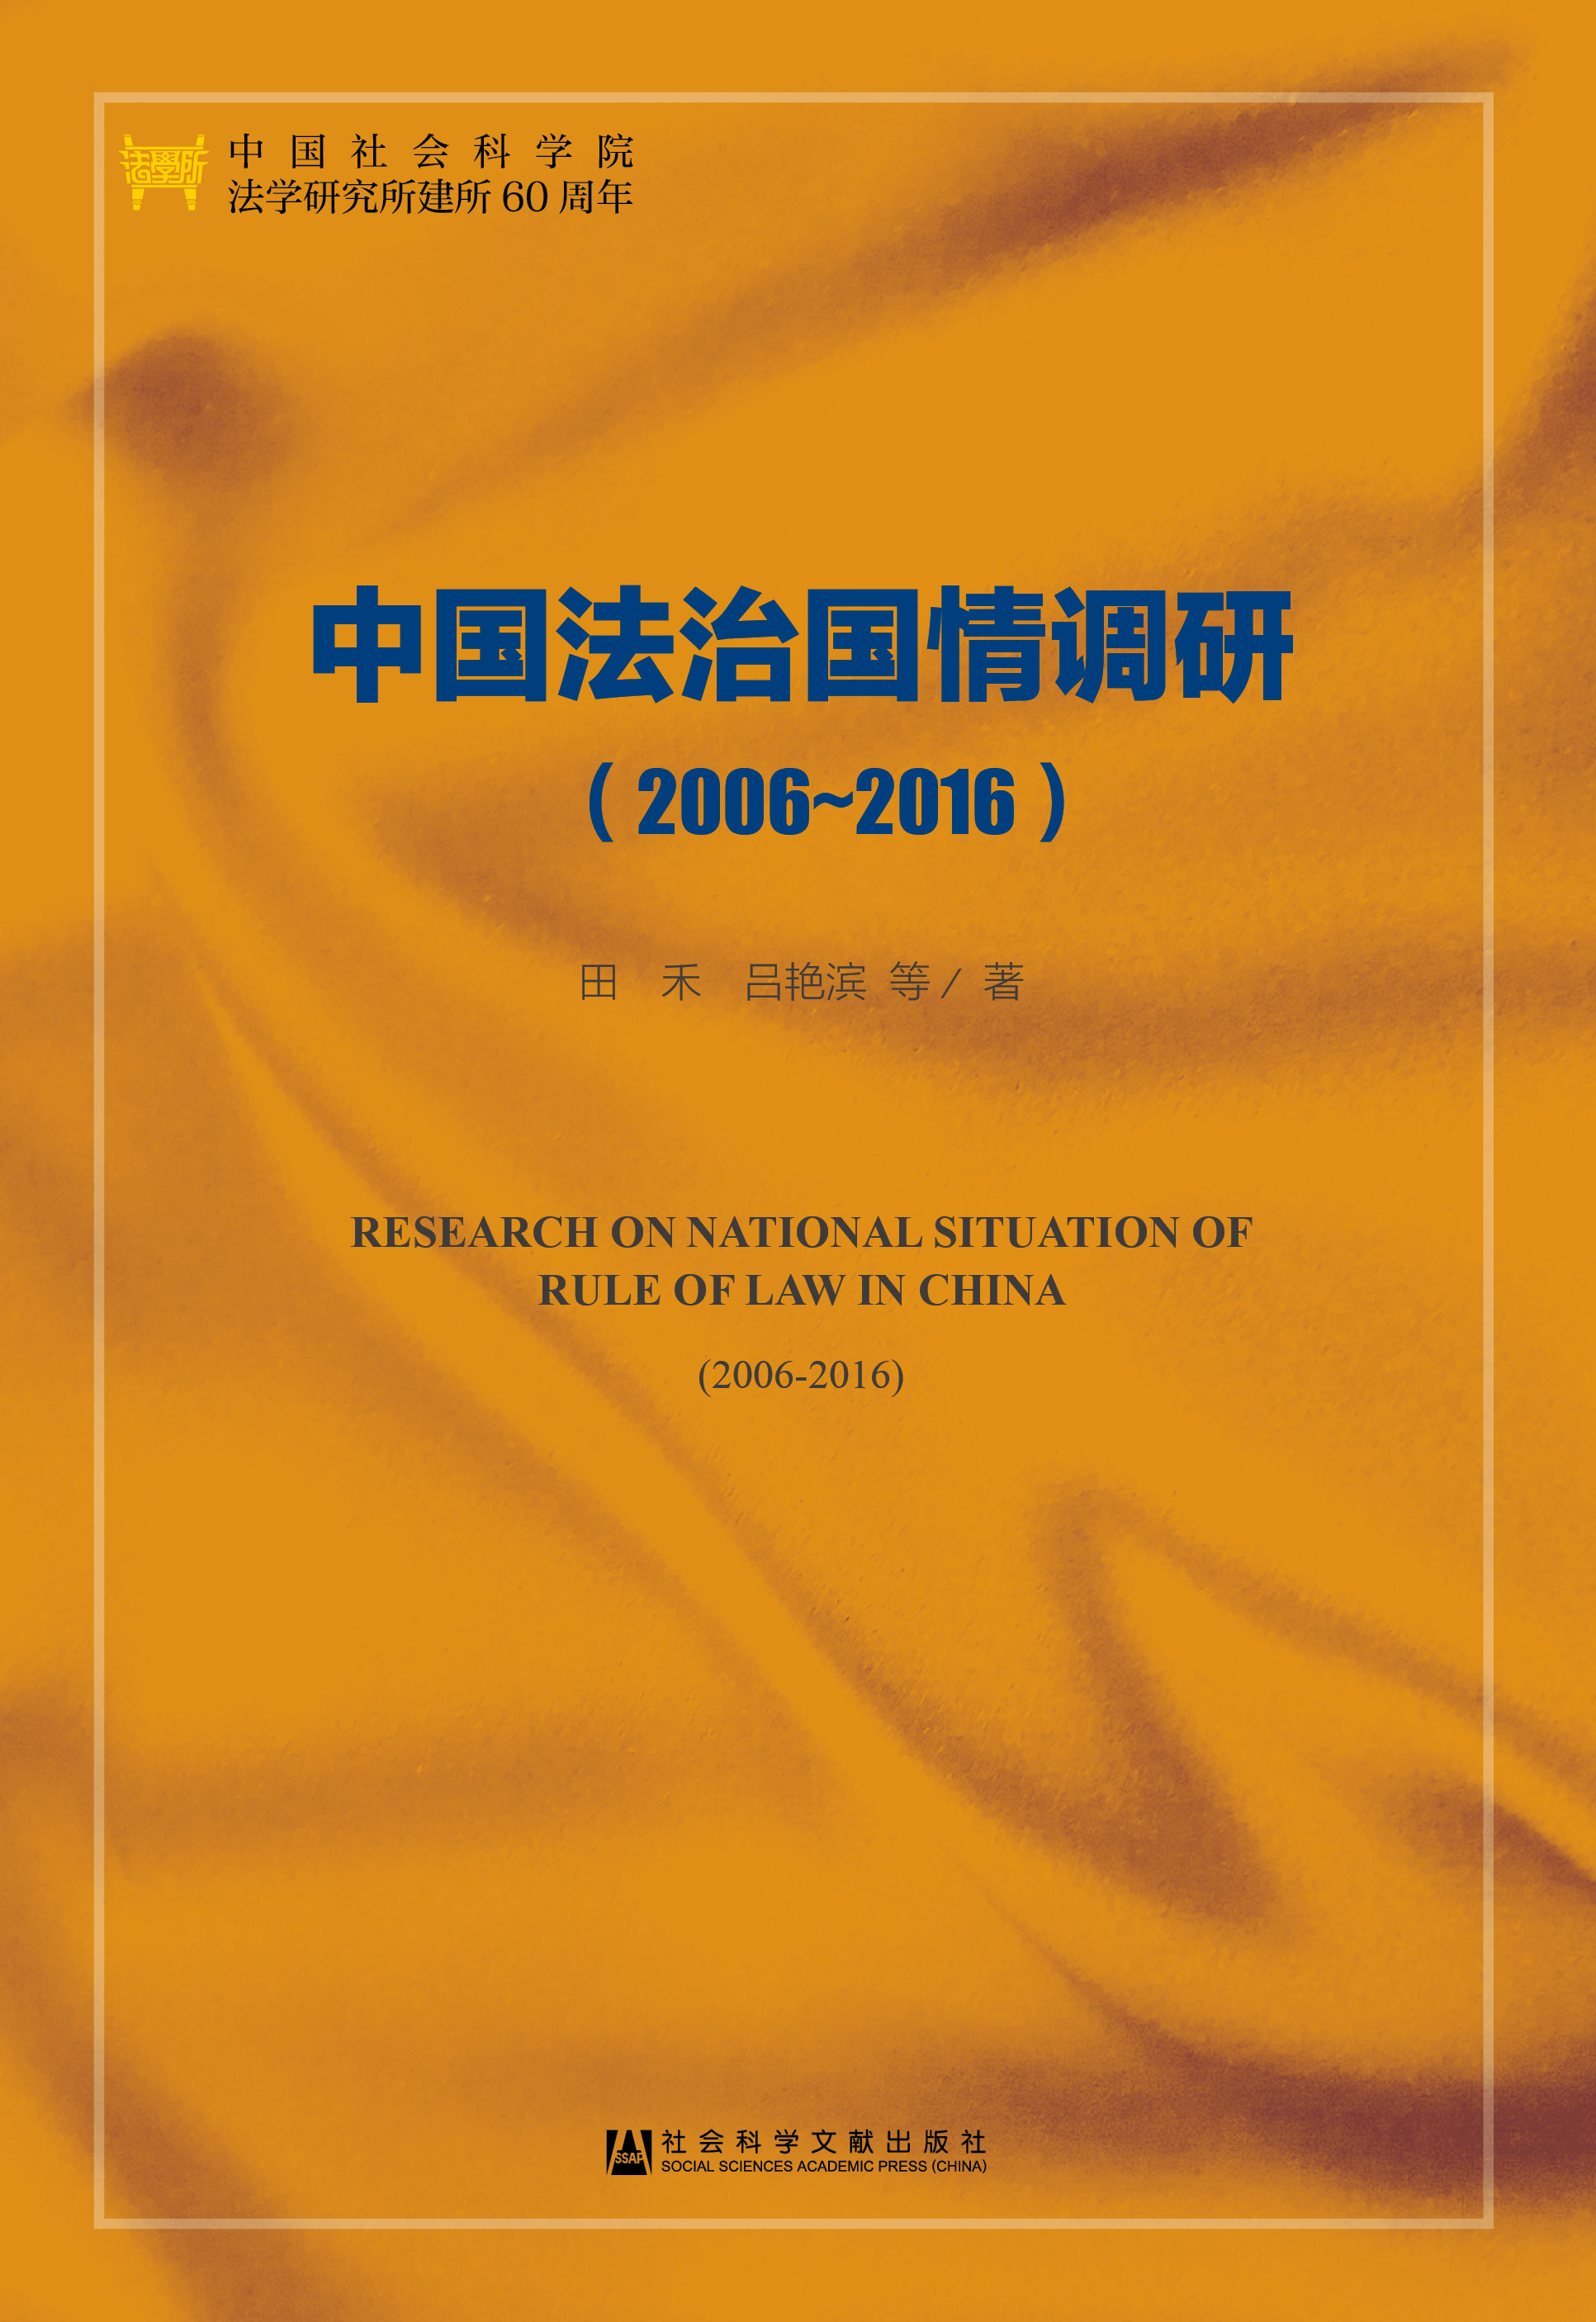 中国法治国情调研(2006-2016)